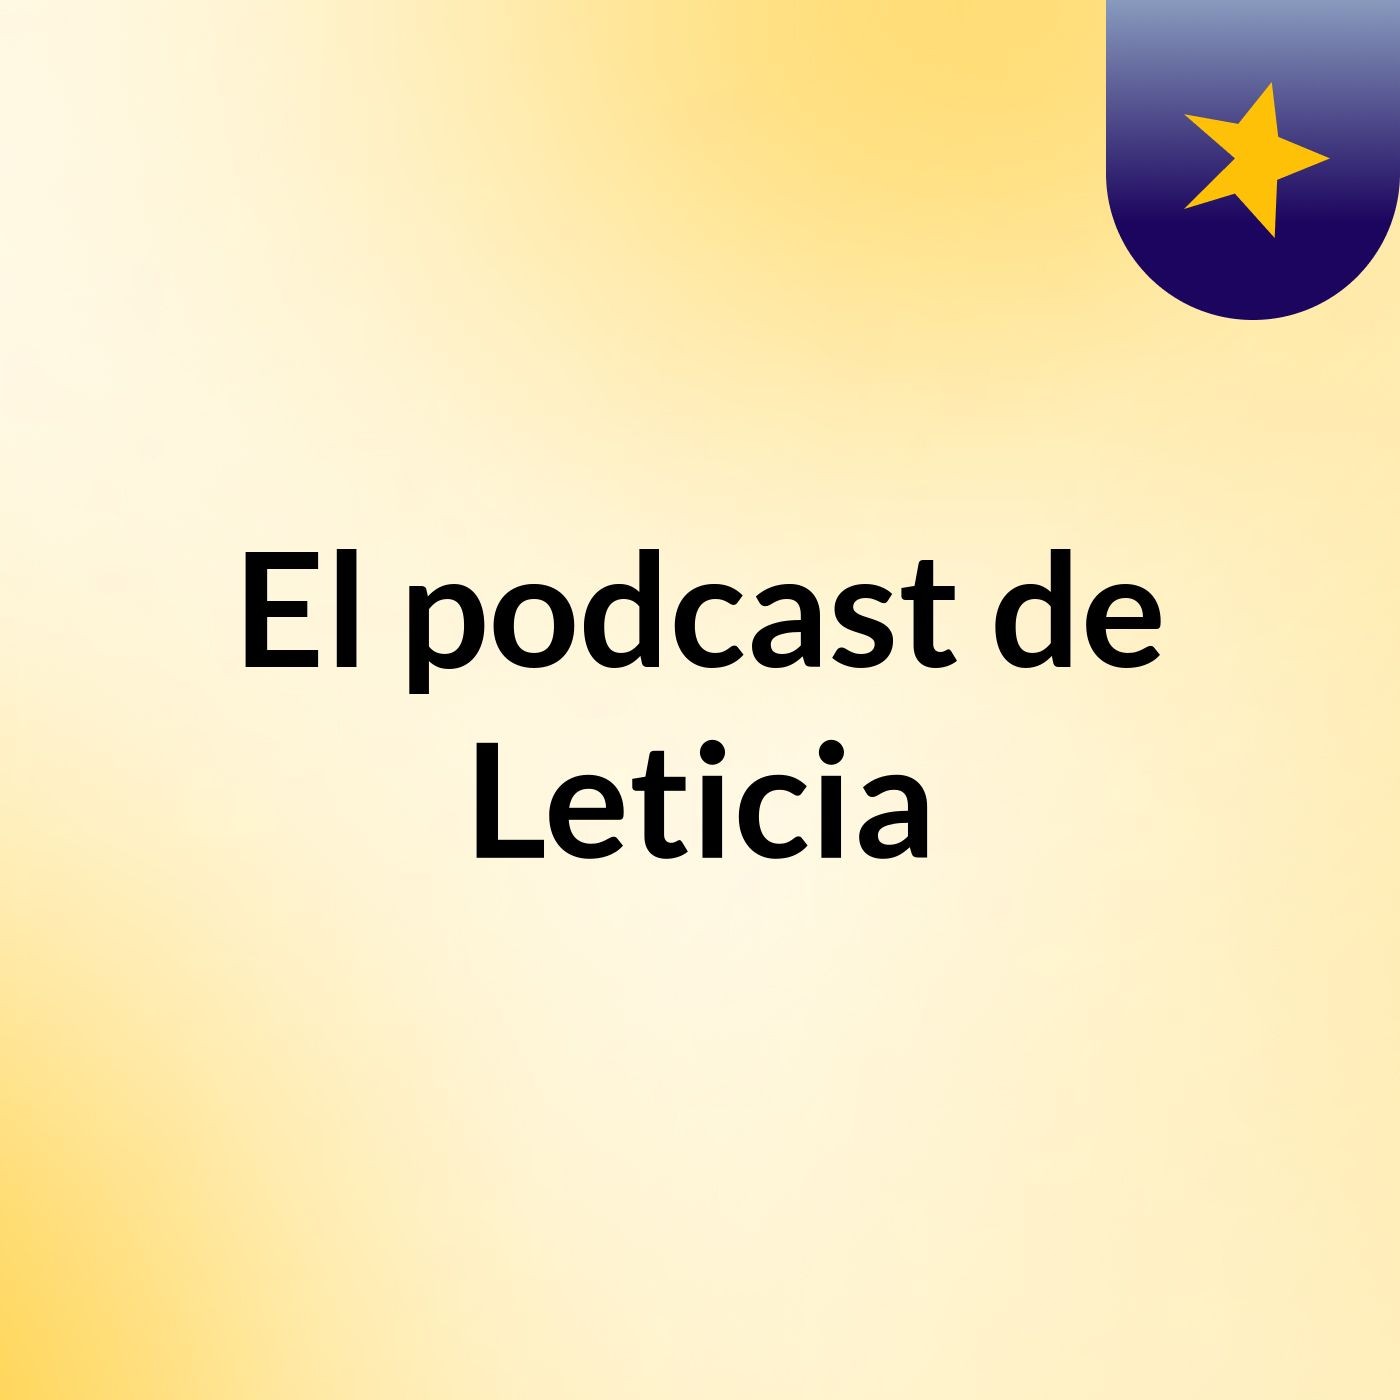 El podcast de Leticia